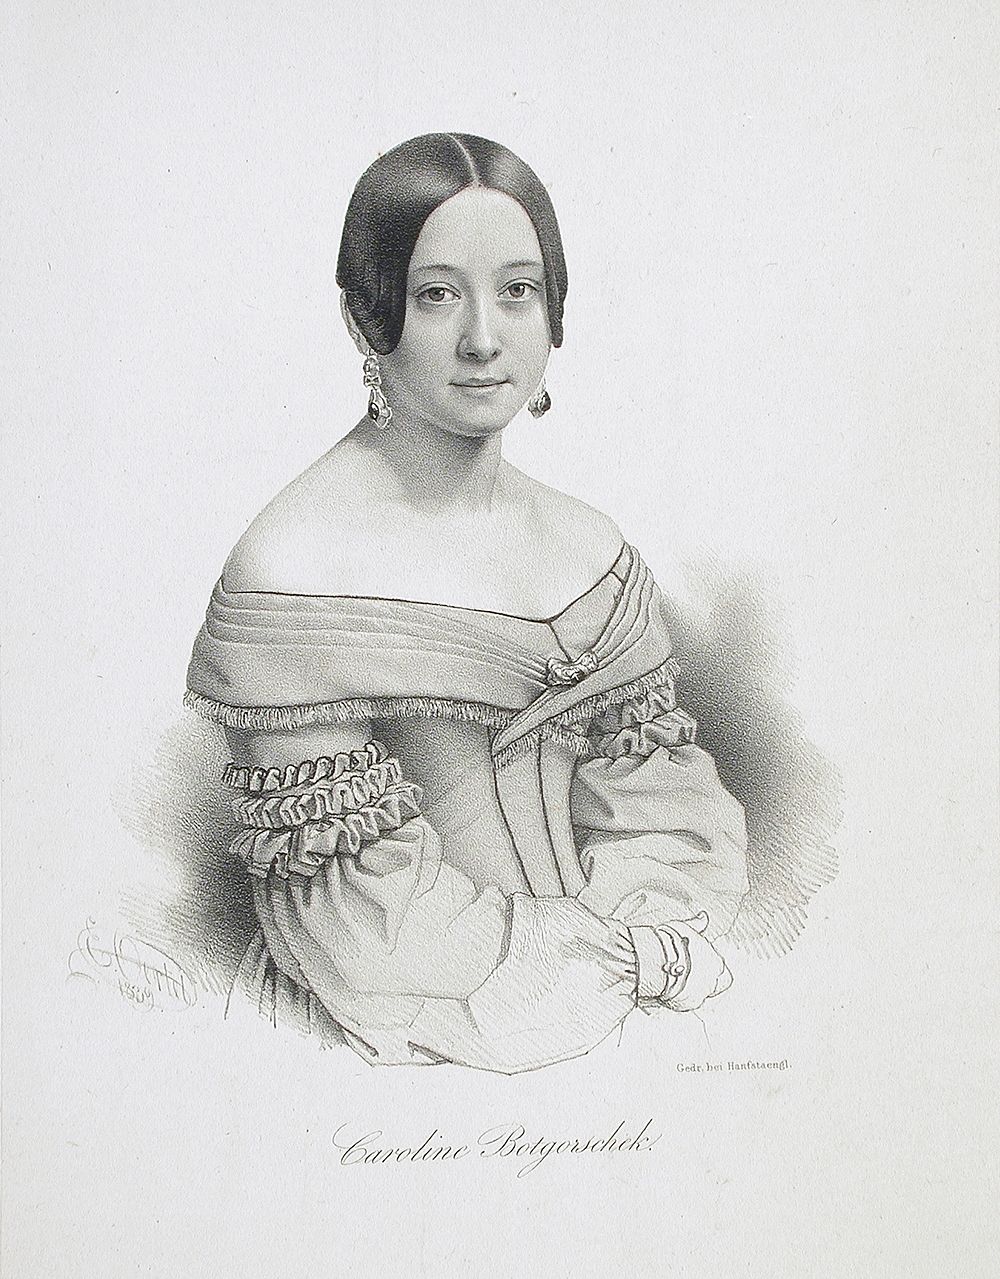 Caroline Botgorschek by Ernst Ferdinand Moritz Oertel